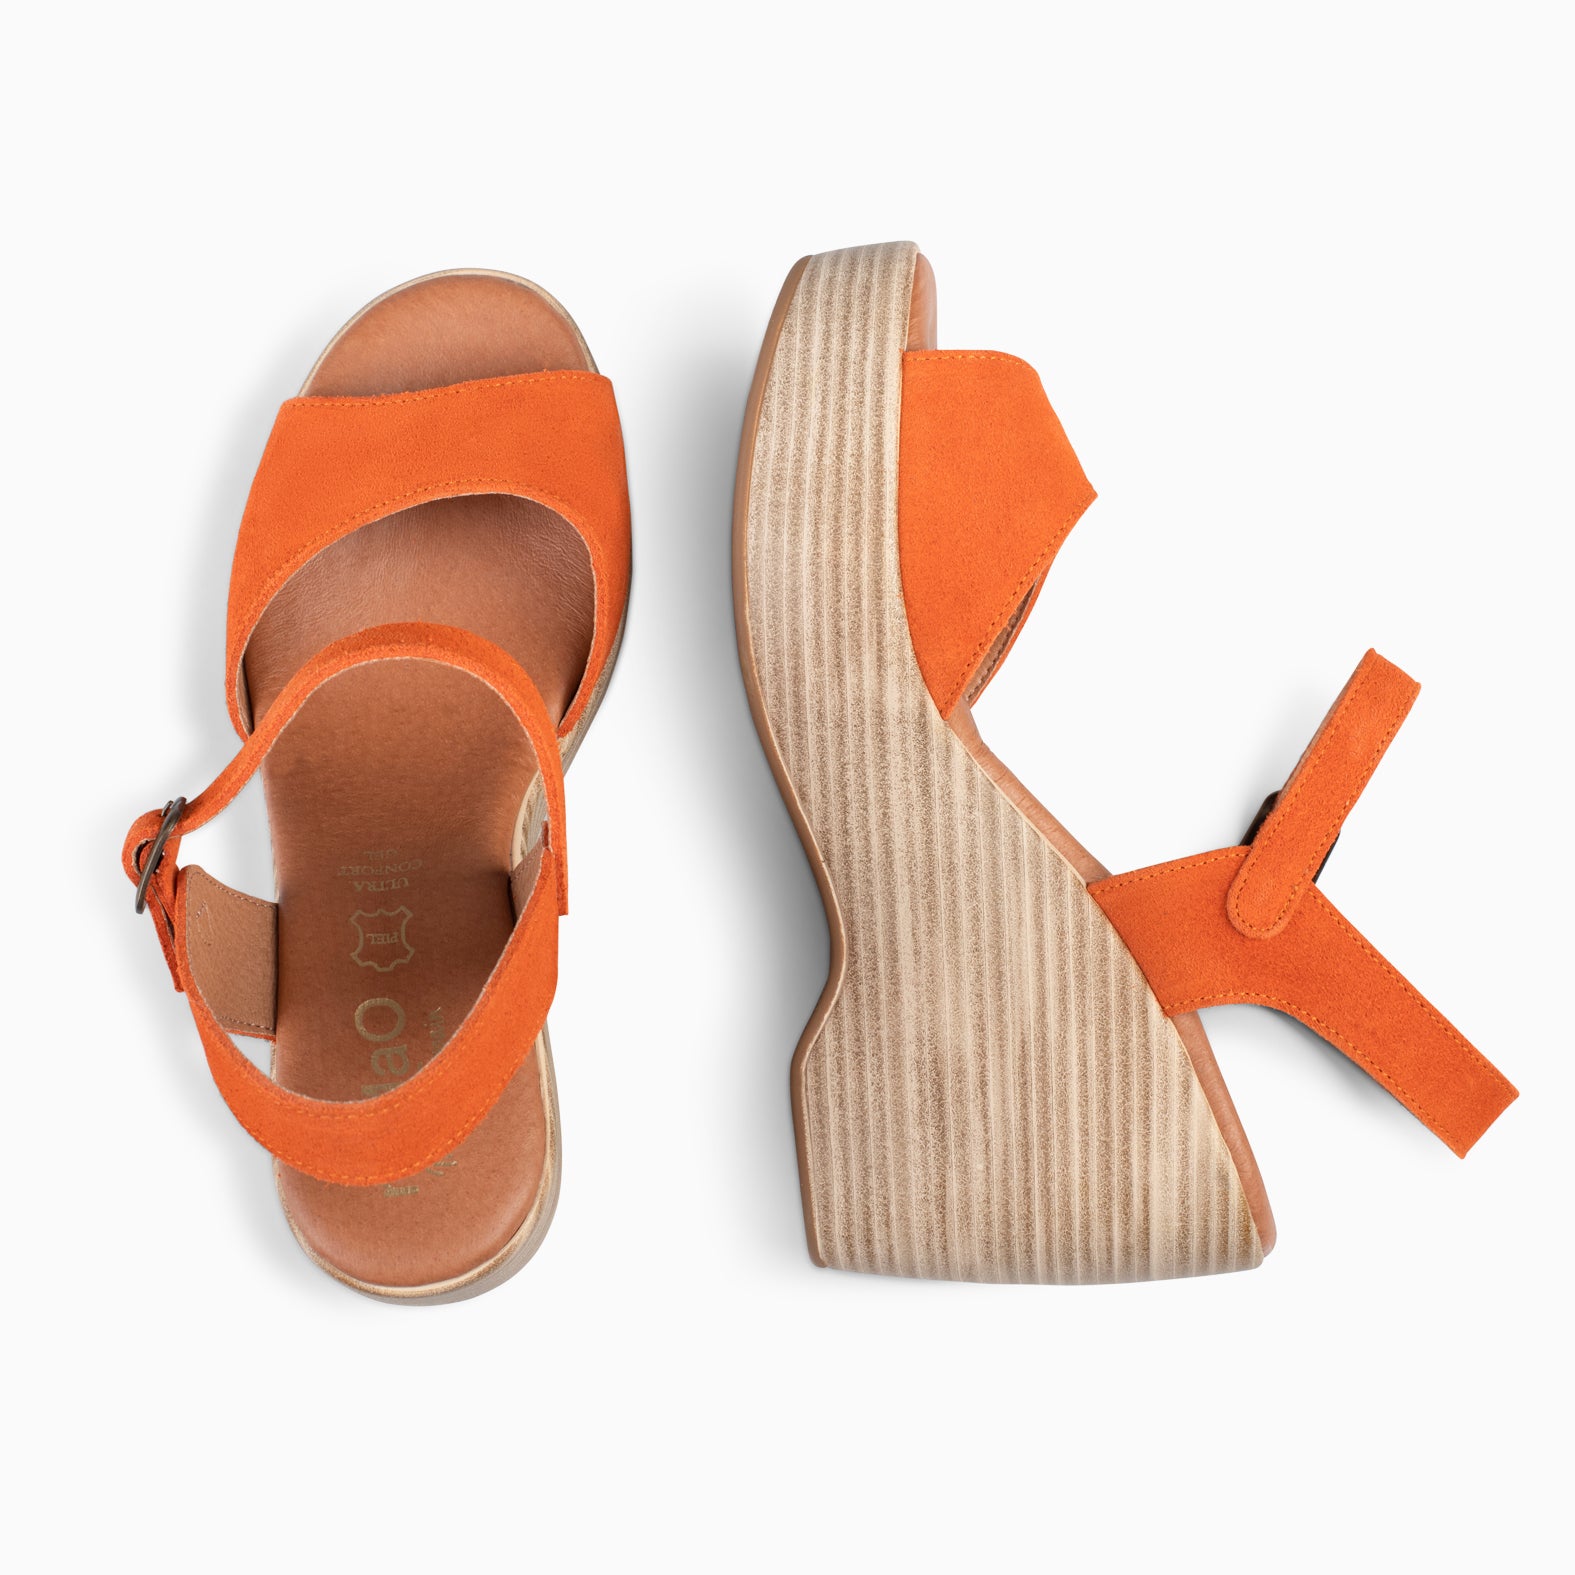 SIDNEY – ORANGE wedge sandals